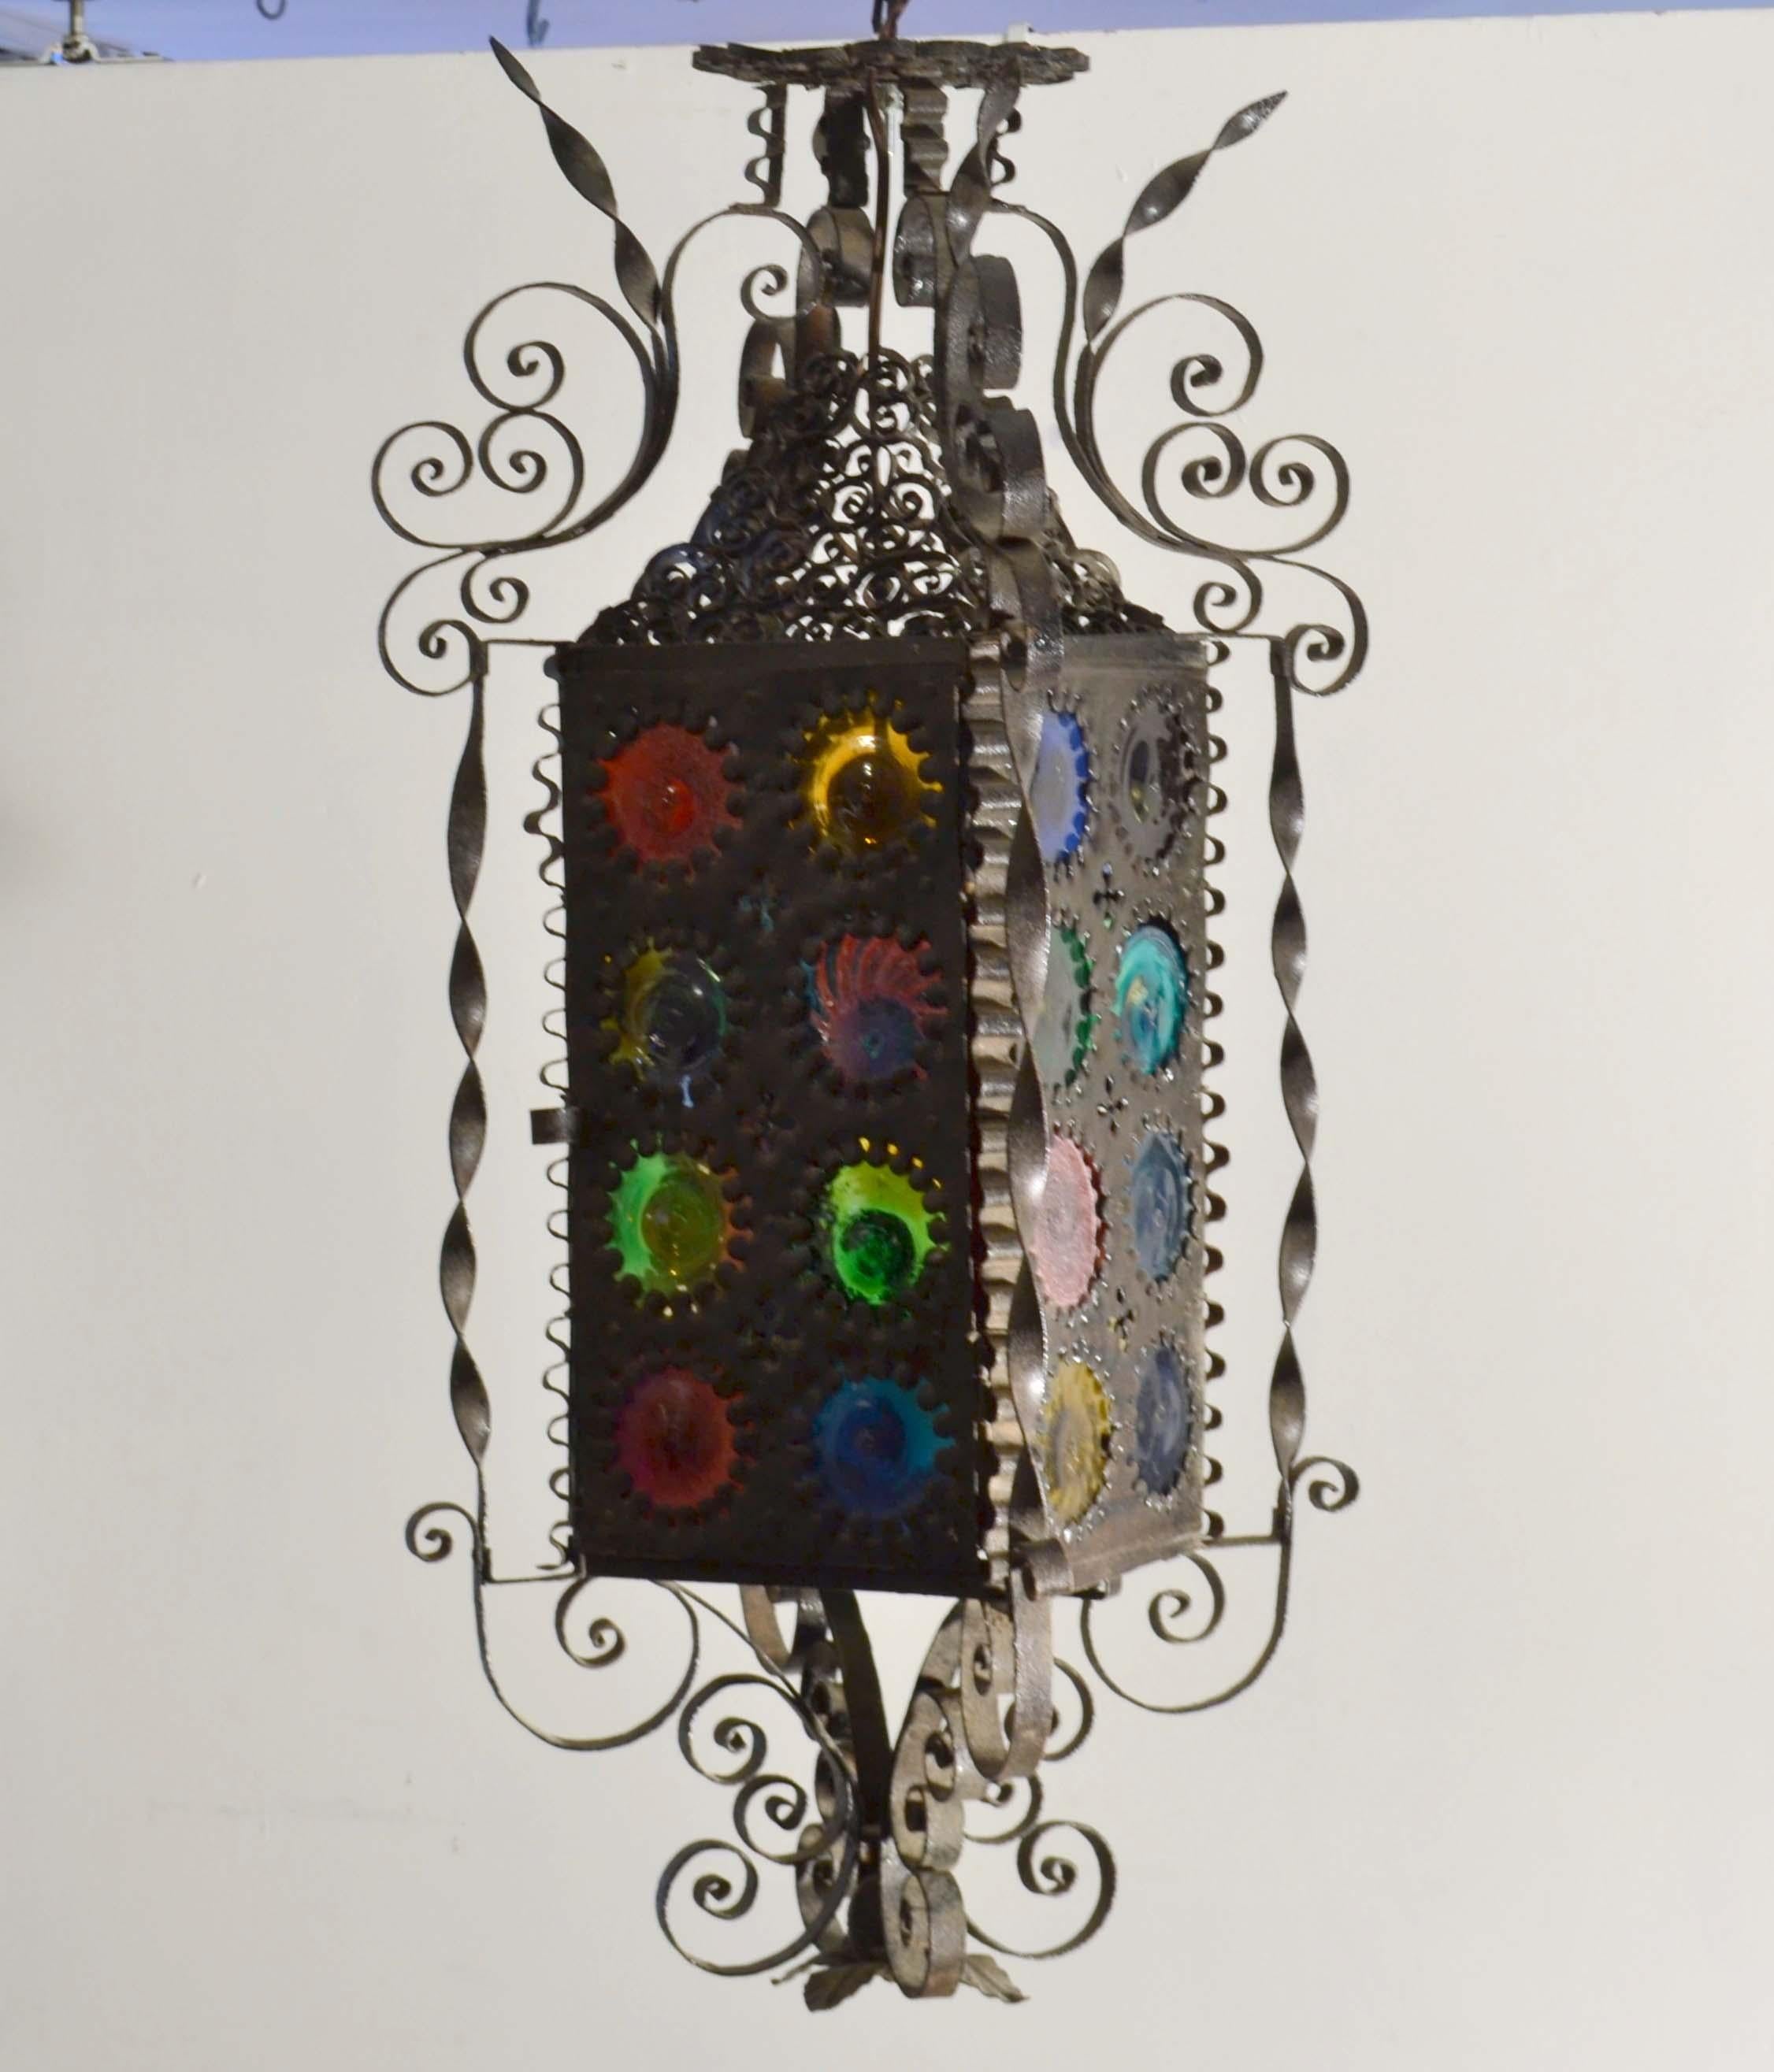 Italienische schmiedeeiserne Laterne aus dem späten 19. Jahrhundert mit mehrfarbig gefärbtem Rundglas. Jede Scheibe ist ein Unikat, mundgeblasen und handgefärbt und stammt wahrscheinlich von der venezianischen Insel Murano. Die Bake wird in der